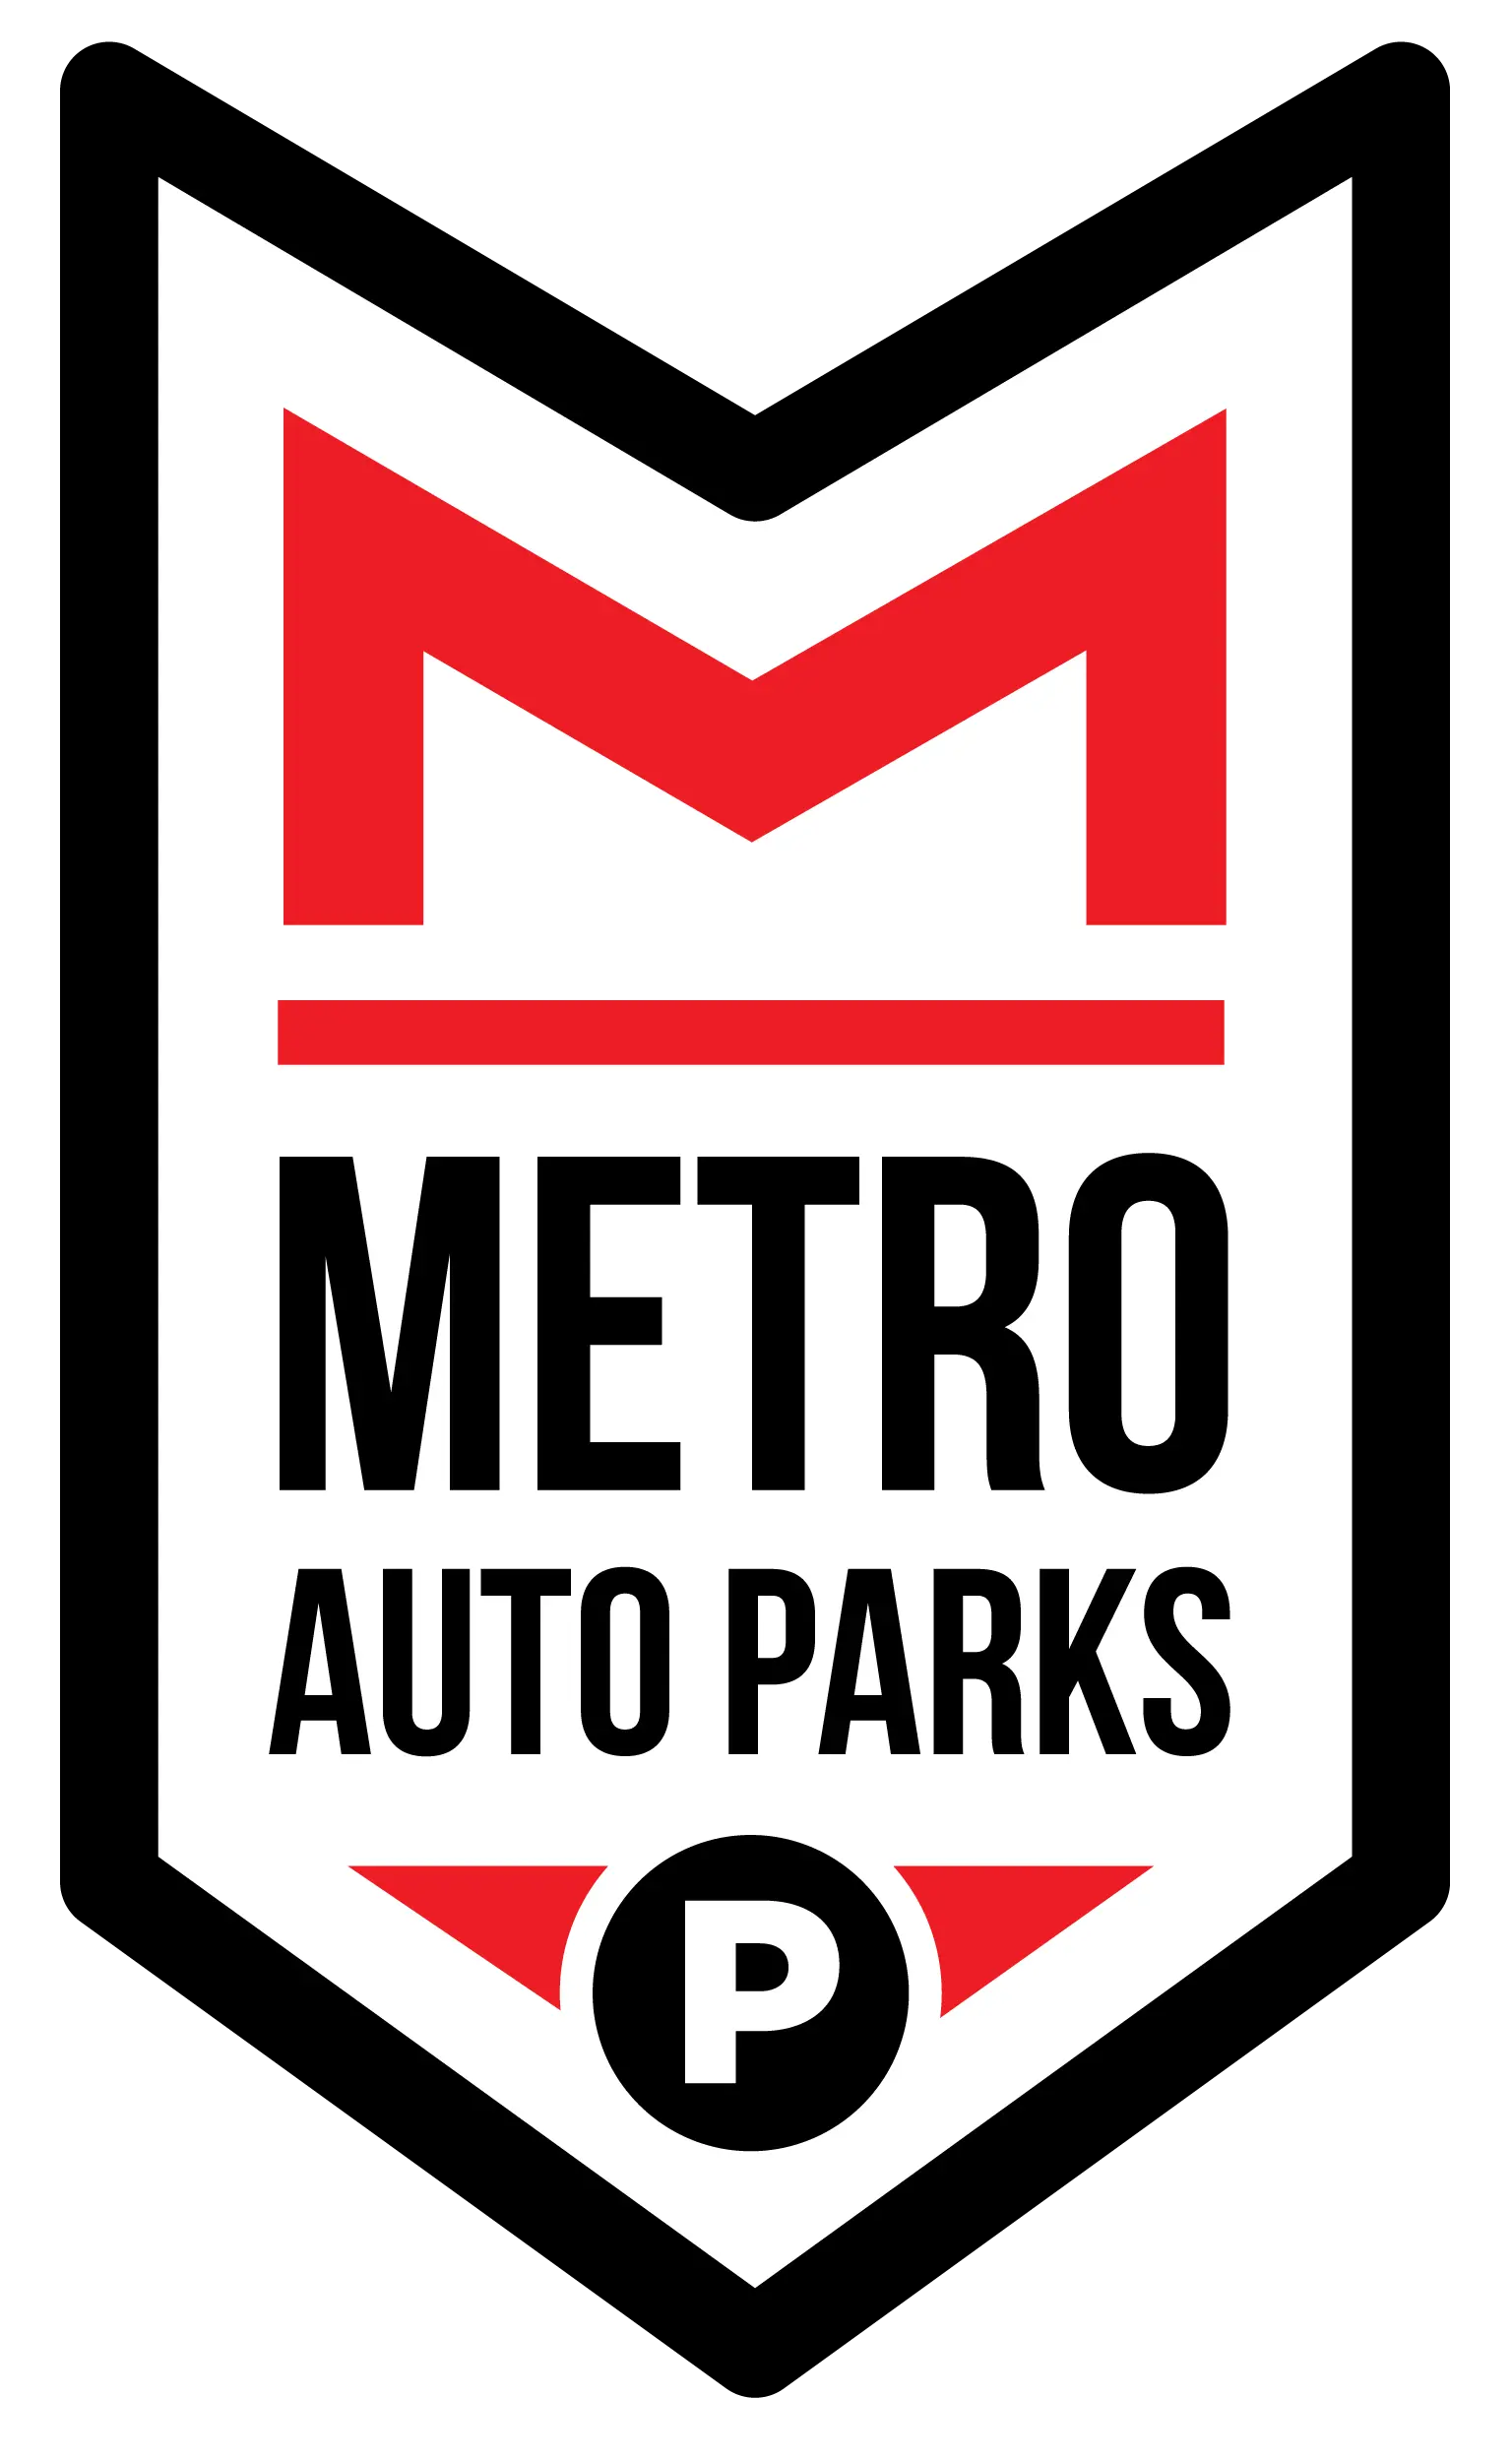 Metro Auto Parks